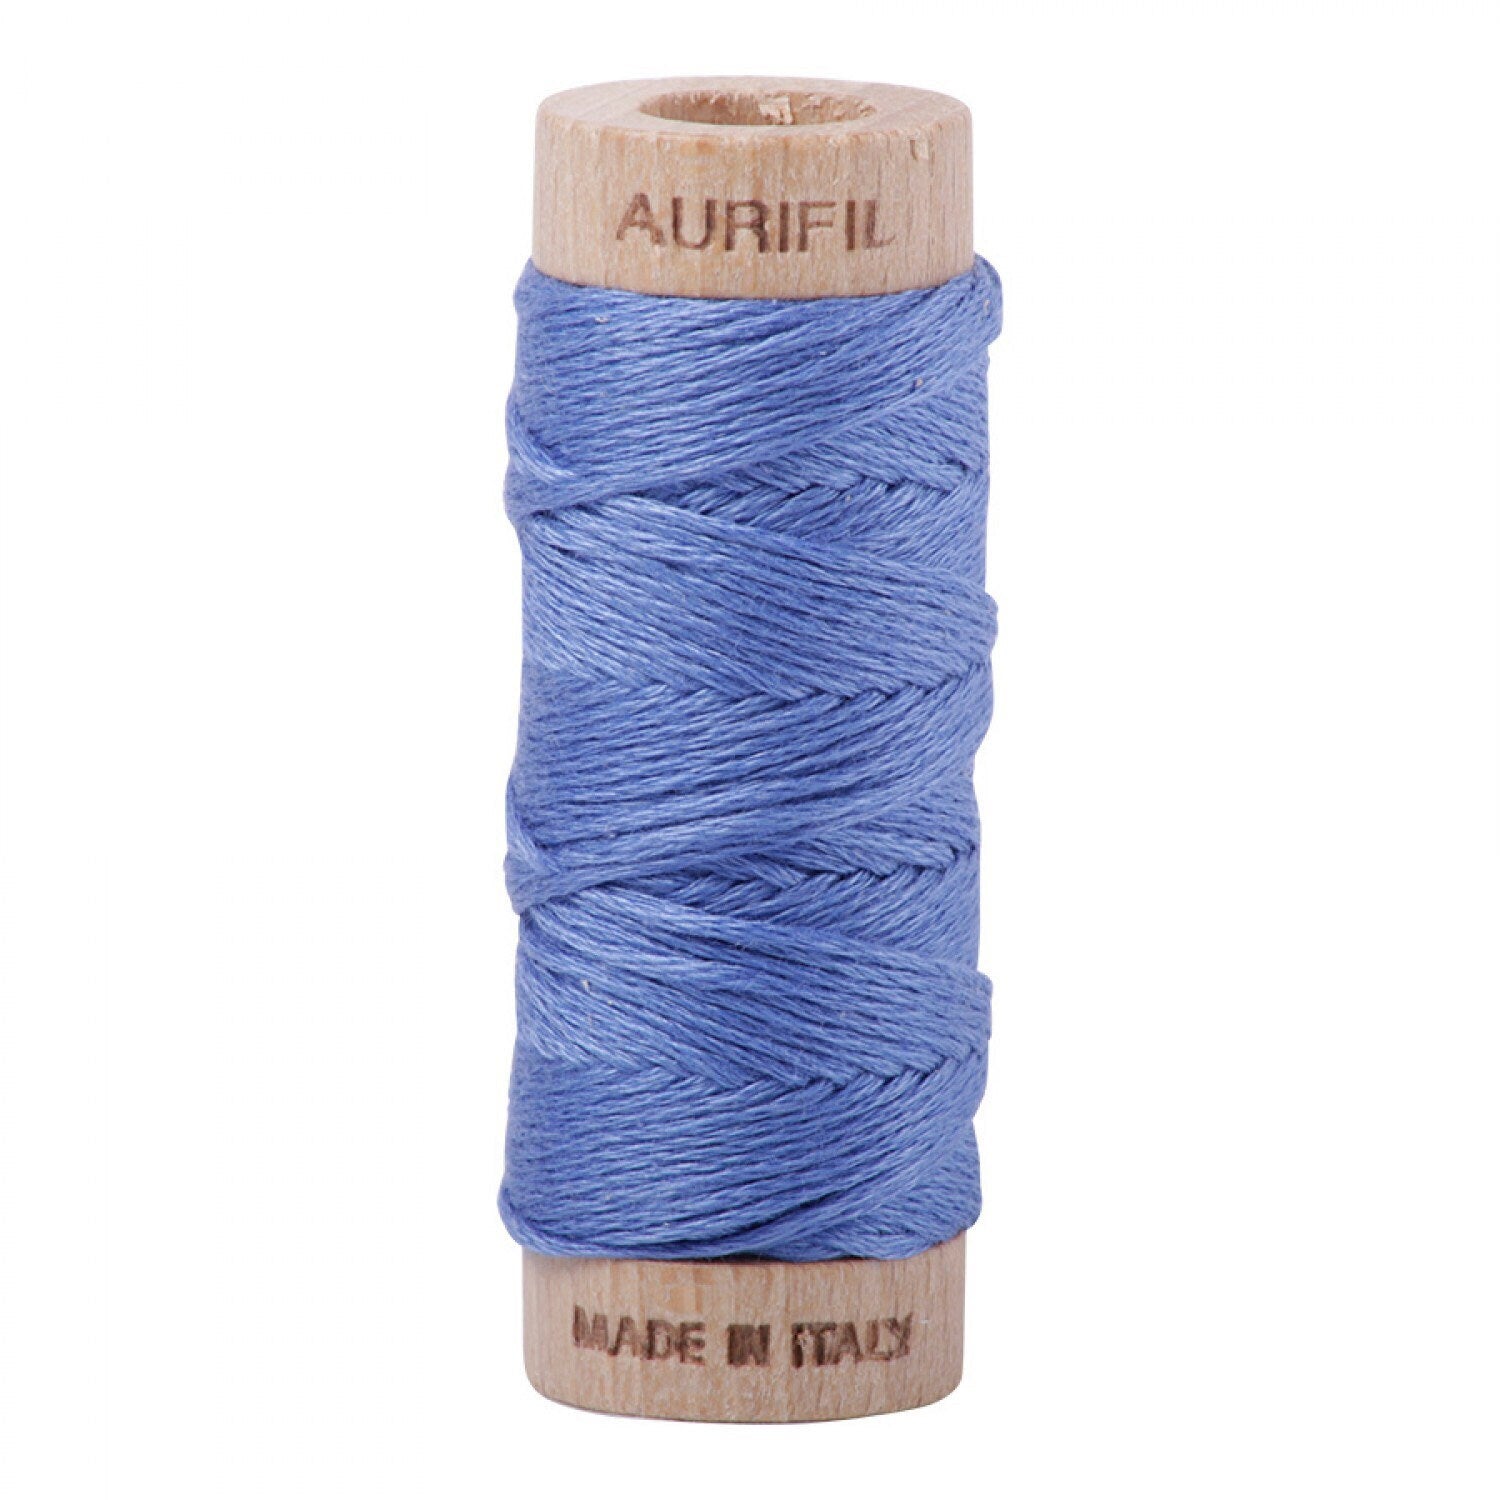 Light Blue Violet Aurifil Floss - 1128 - Aurifloss